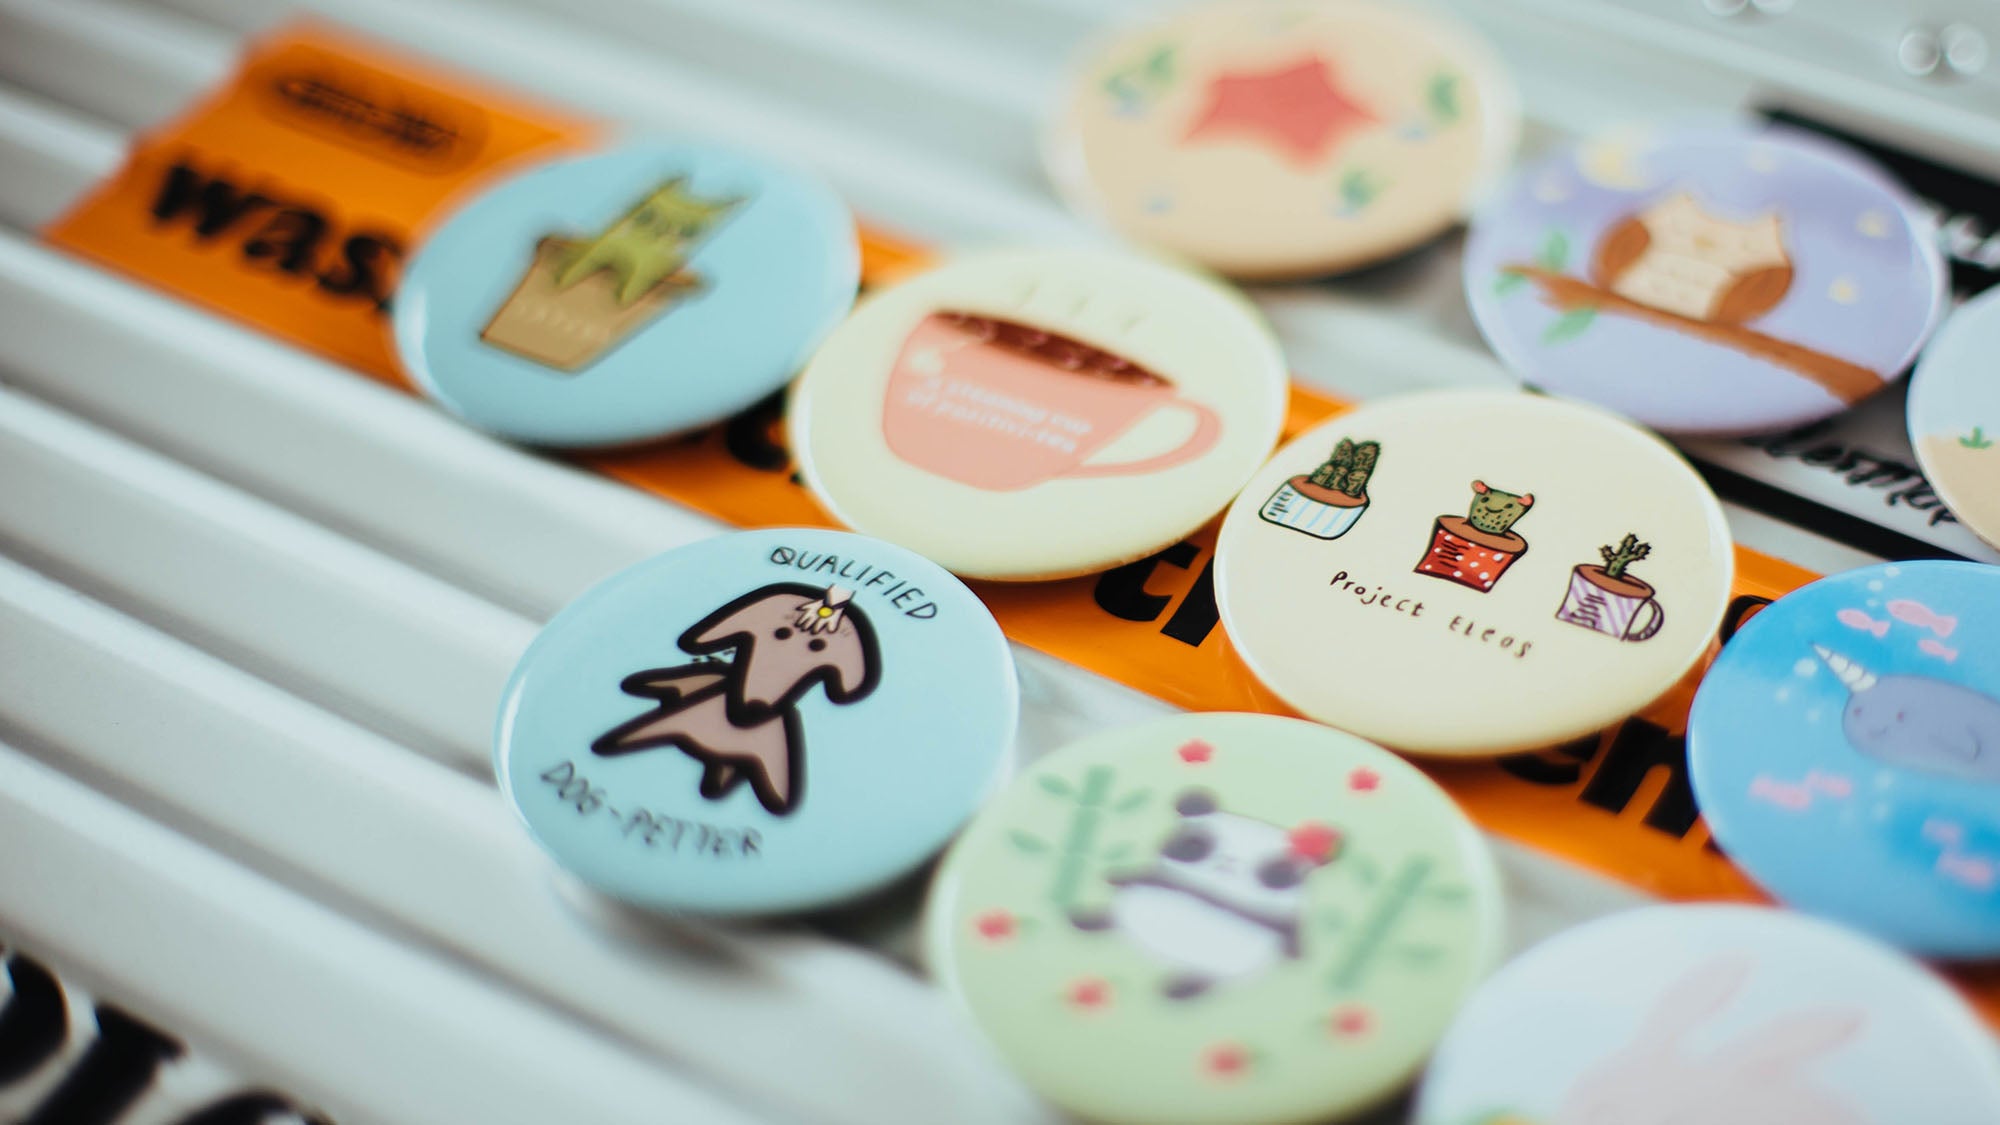 Diverse runde Pins mit unterschiedlichen Motiven und Farben liegen nebeneinander. Emaille Anstecker und Pins können den Einstieg in dein DIY-Business darstellen. Mehr Inspiration findest du in diesem Beitrag!